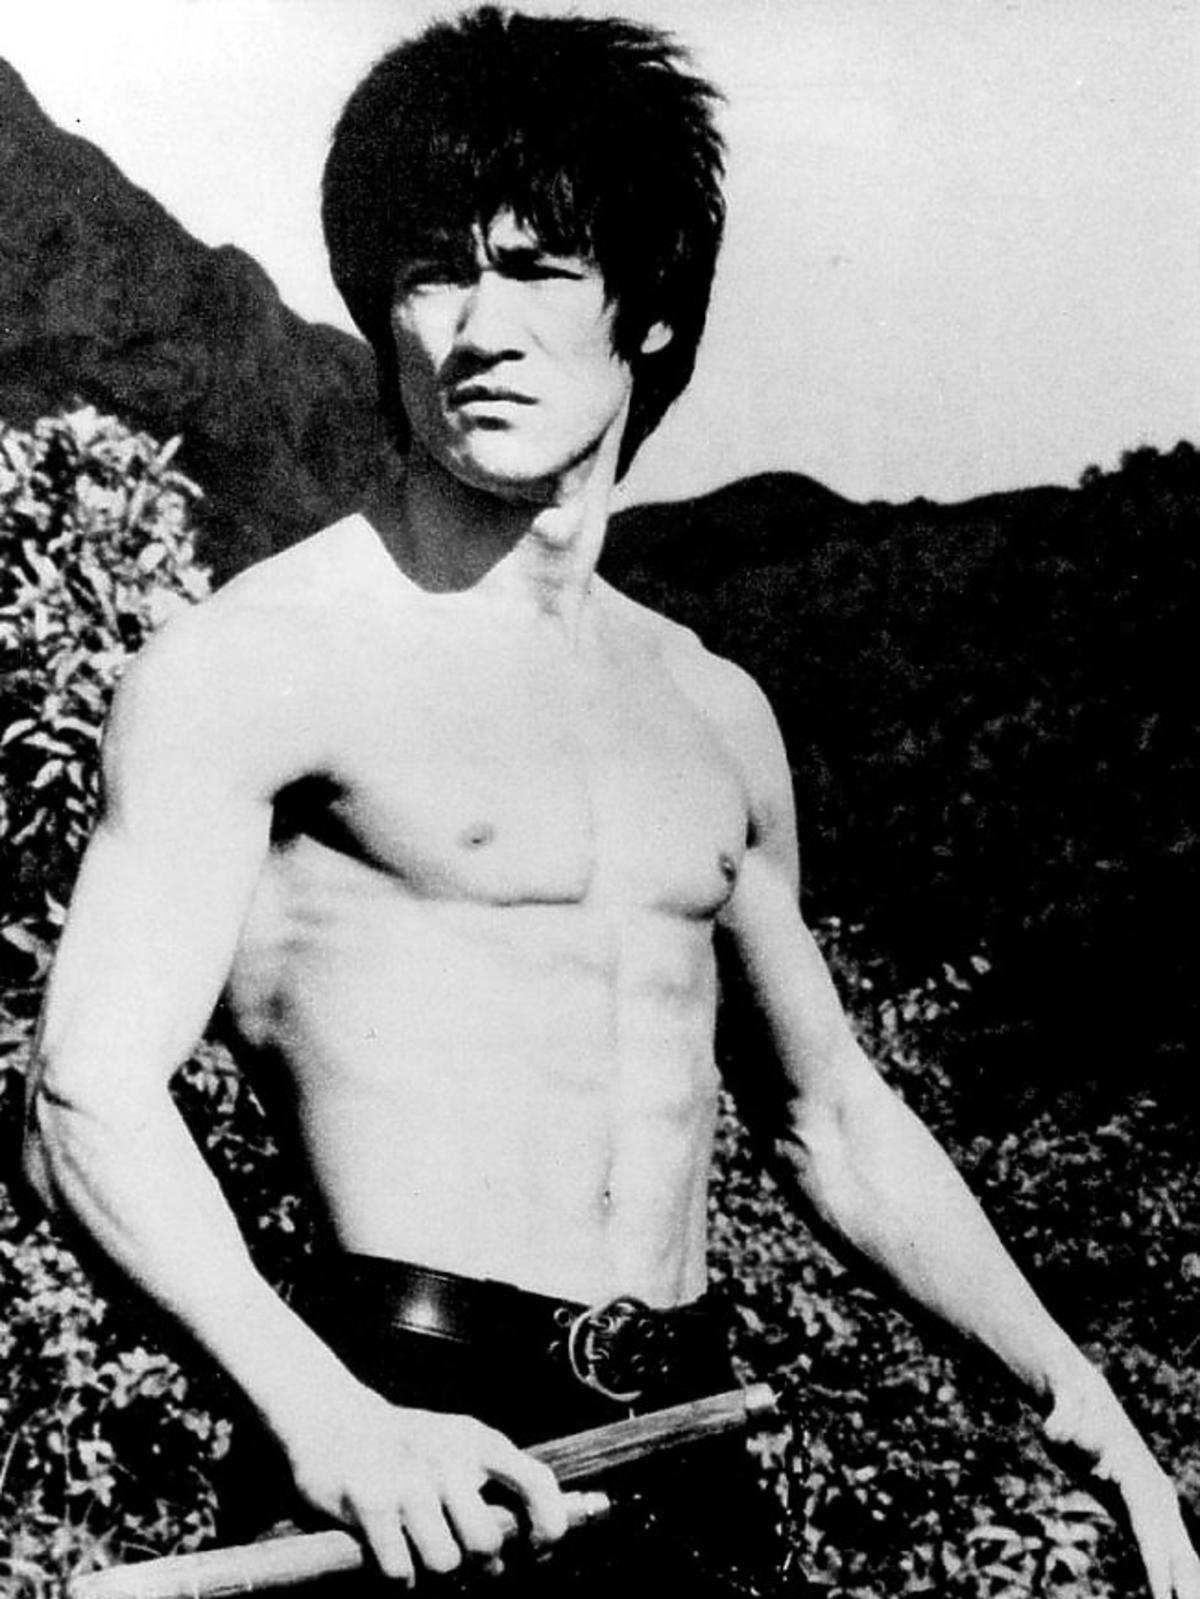 Bruce Lee w rankingu najlepiej zarabiających gwiazd po śmierci 2013 magazynu Forbes